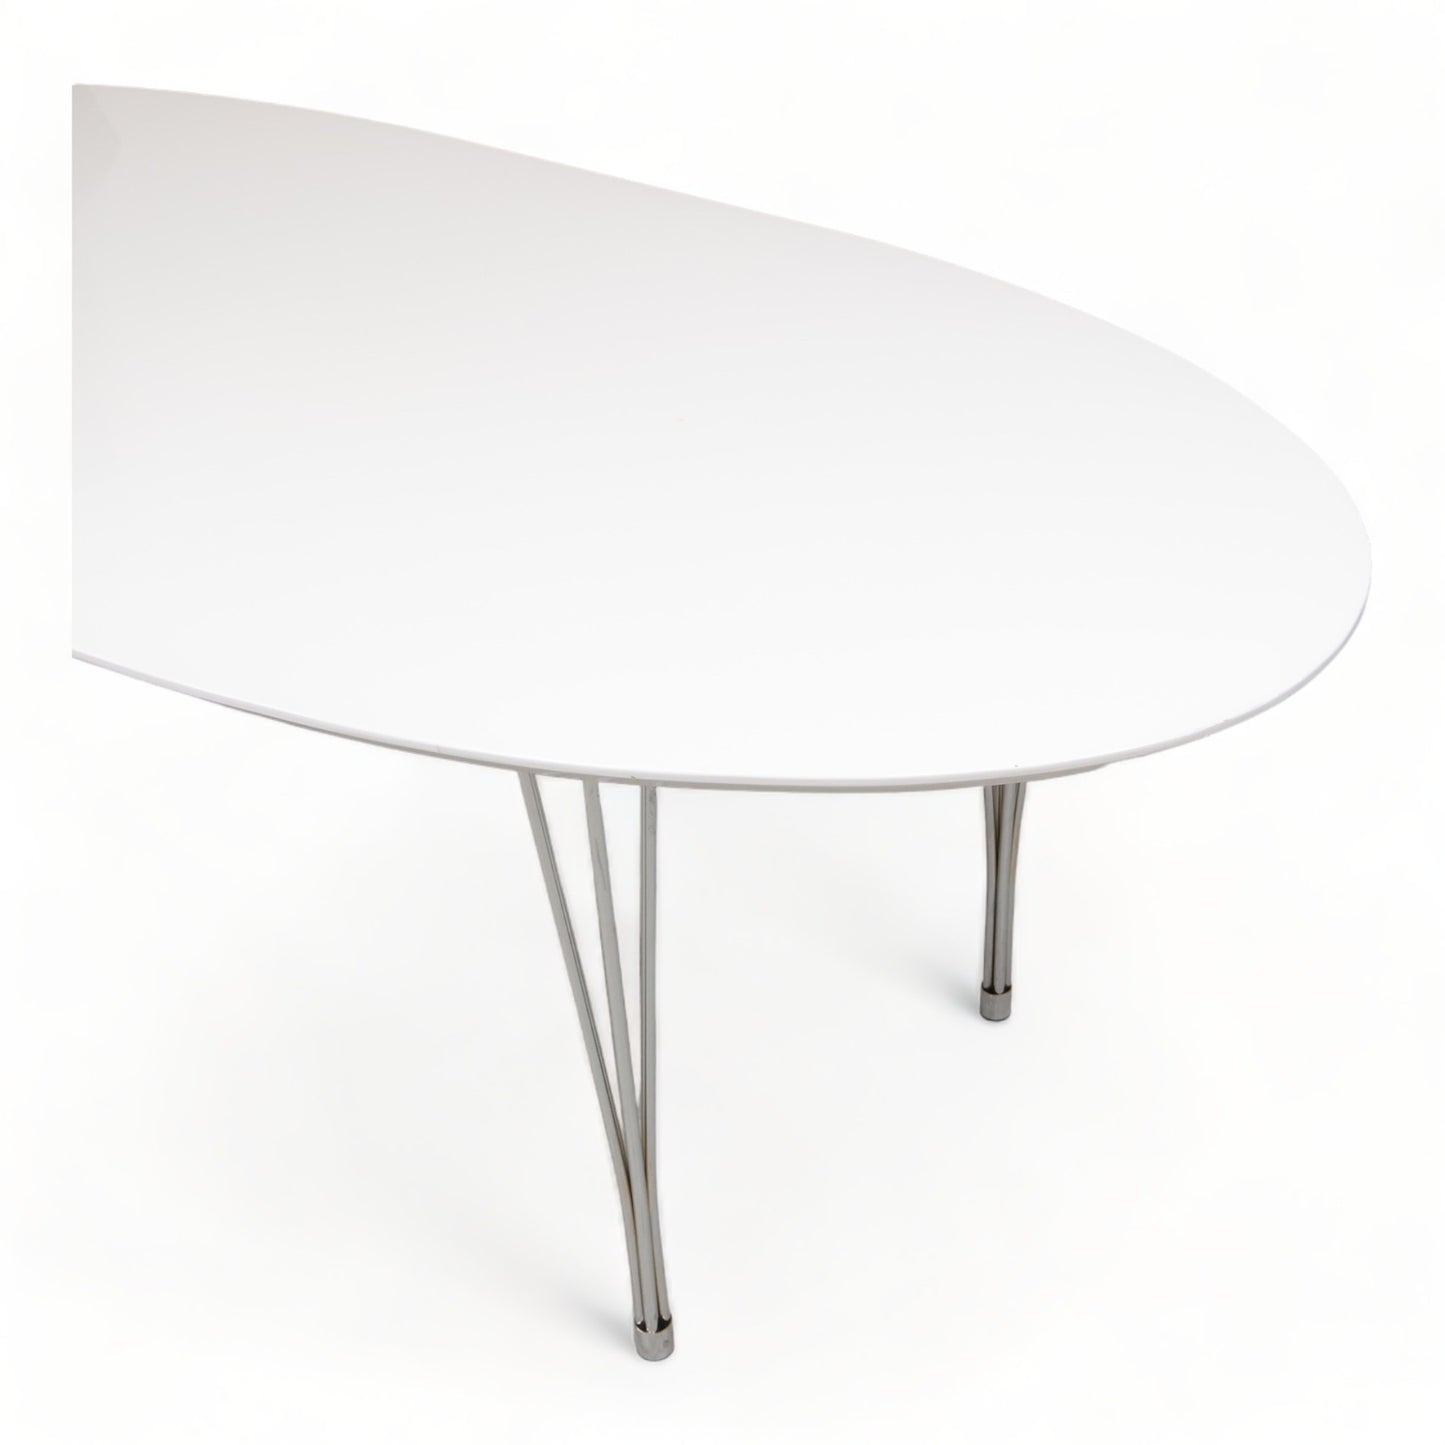 Kvalitetsikret | 220x100 cm, moderne møtebord i hvit/krom